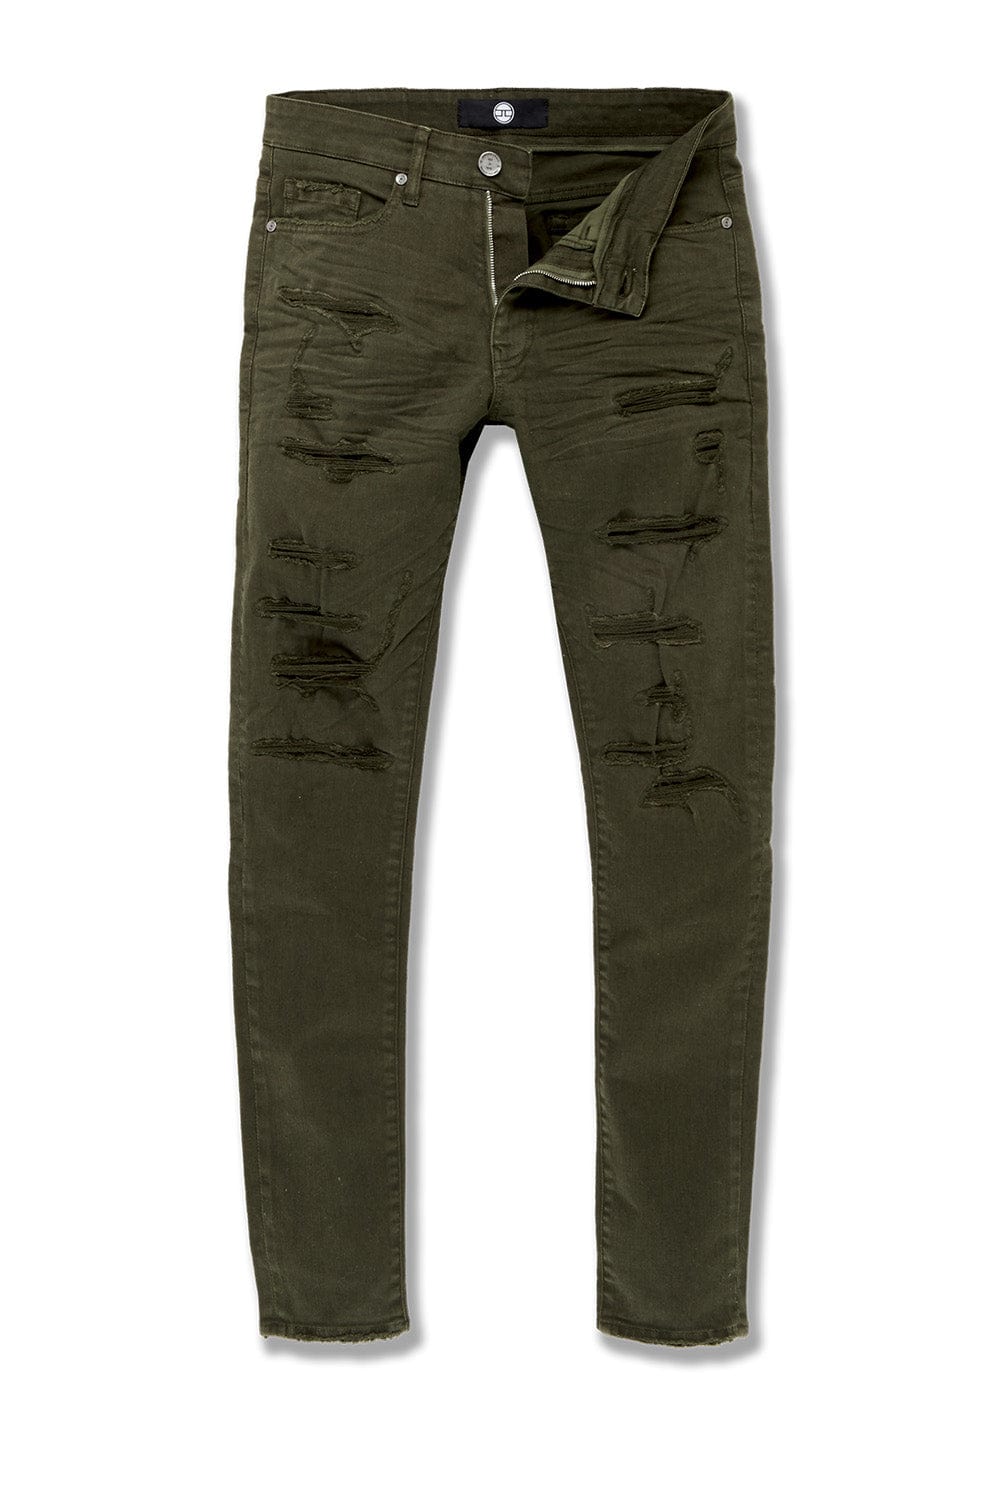 Jordan Craig Sean - Tribeca Twill Pants (Core Colors) Army Green / 30/32